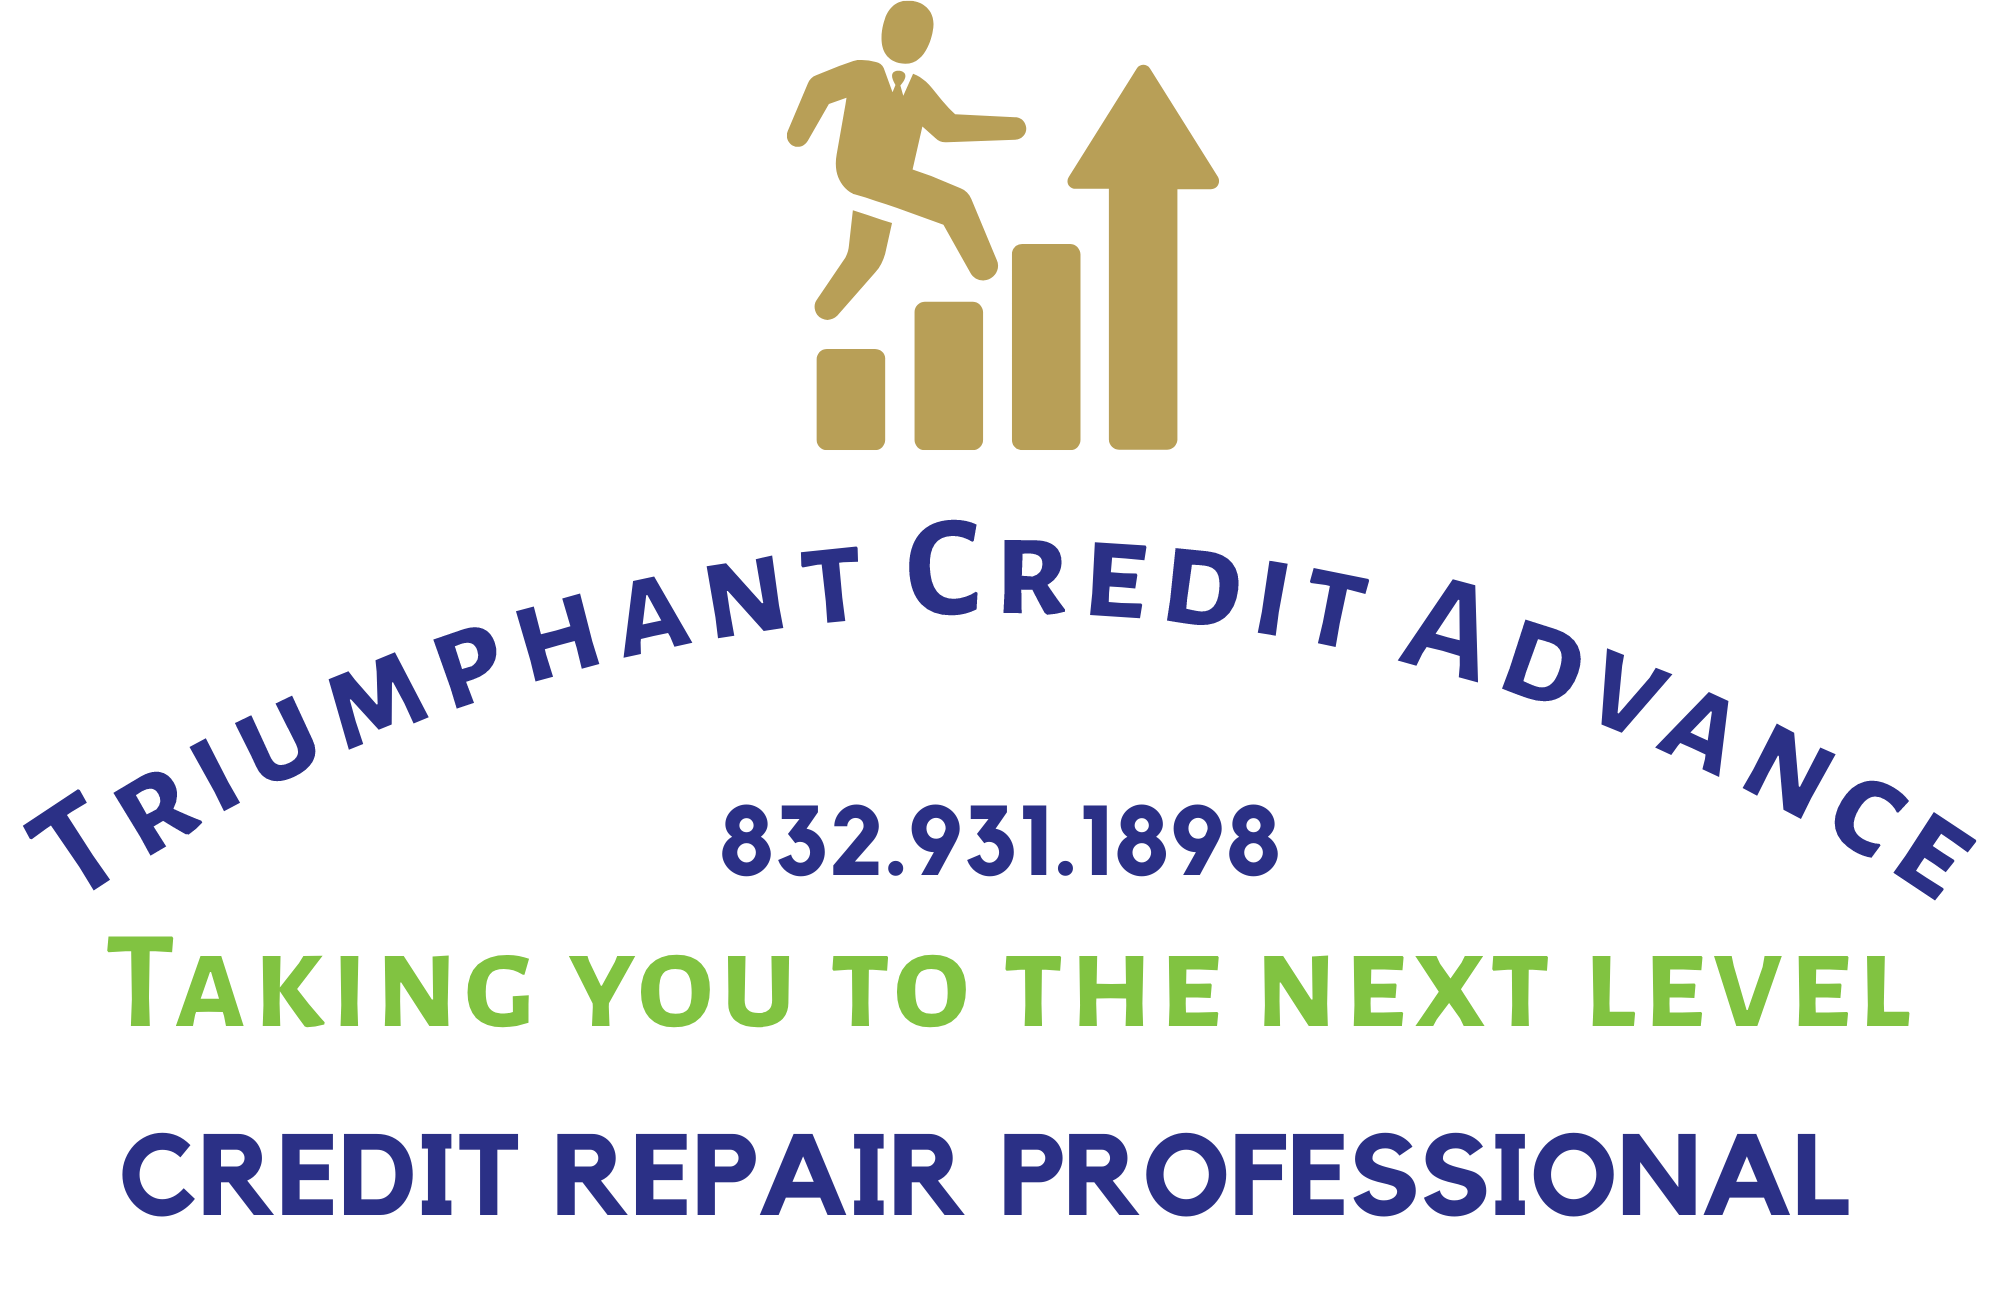 Triumphant Credit Advance - Credit Repair